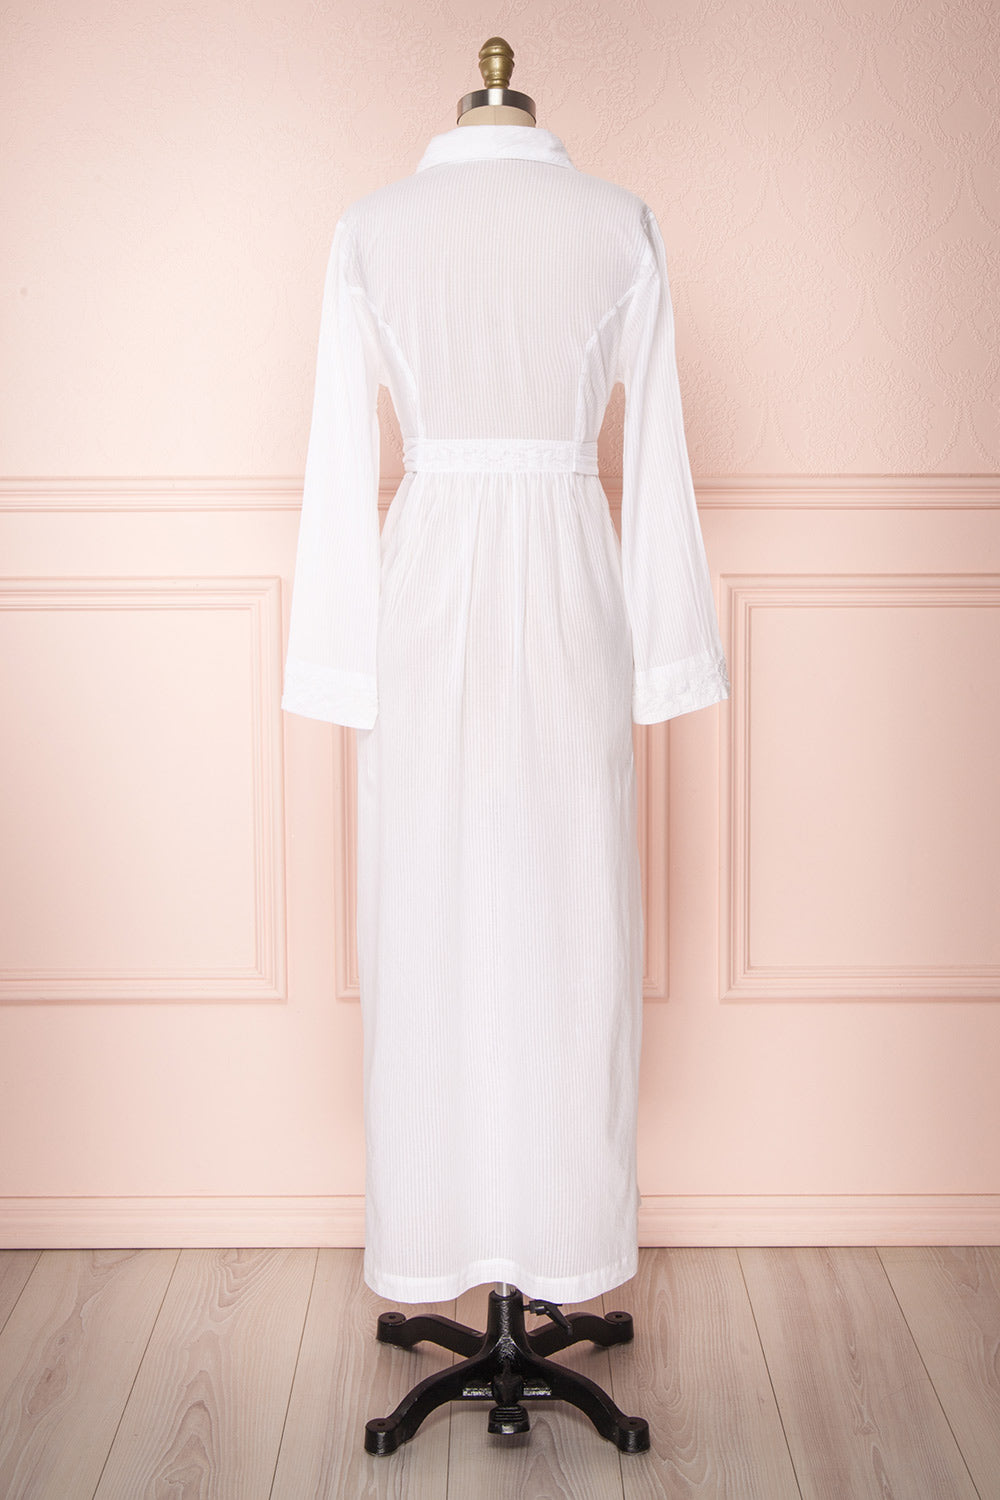 Shihoka White Cotton Kimono with Stripes & Embroidery | Boutique 1861 7